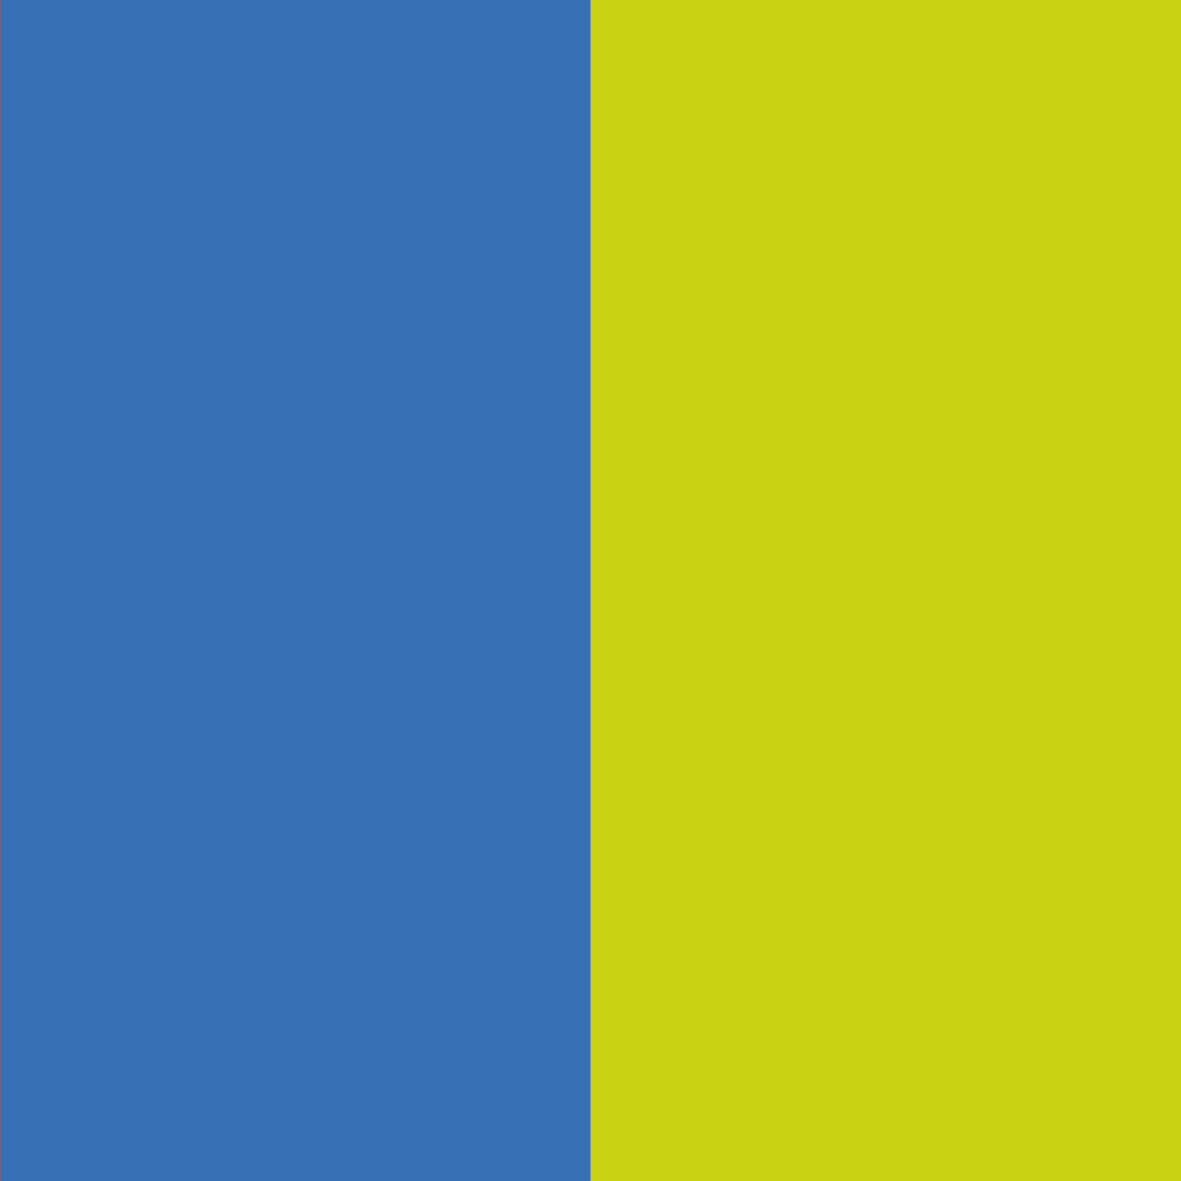 blu chiaro - giallo chiaro